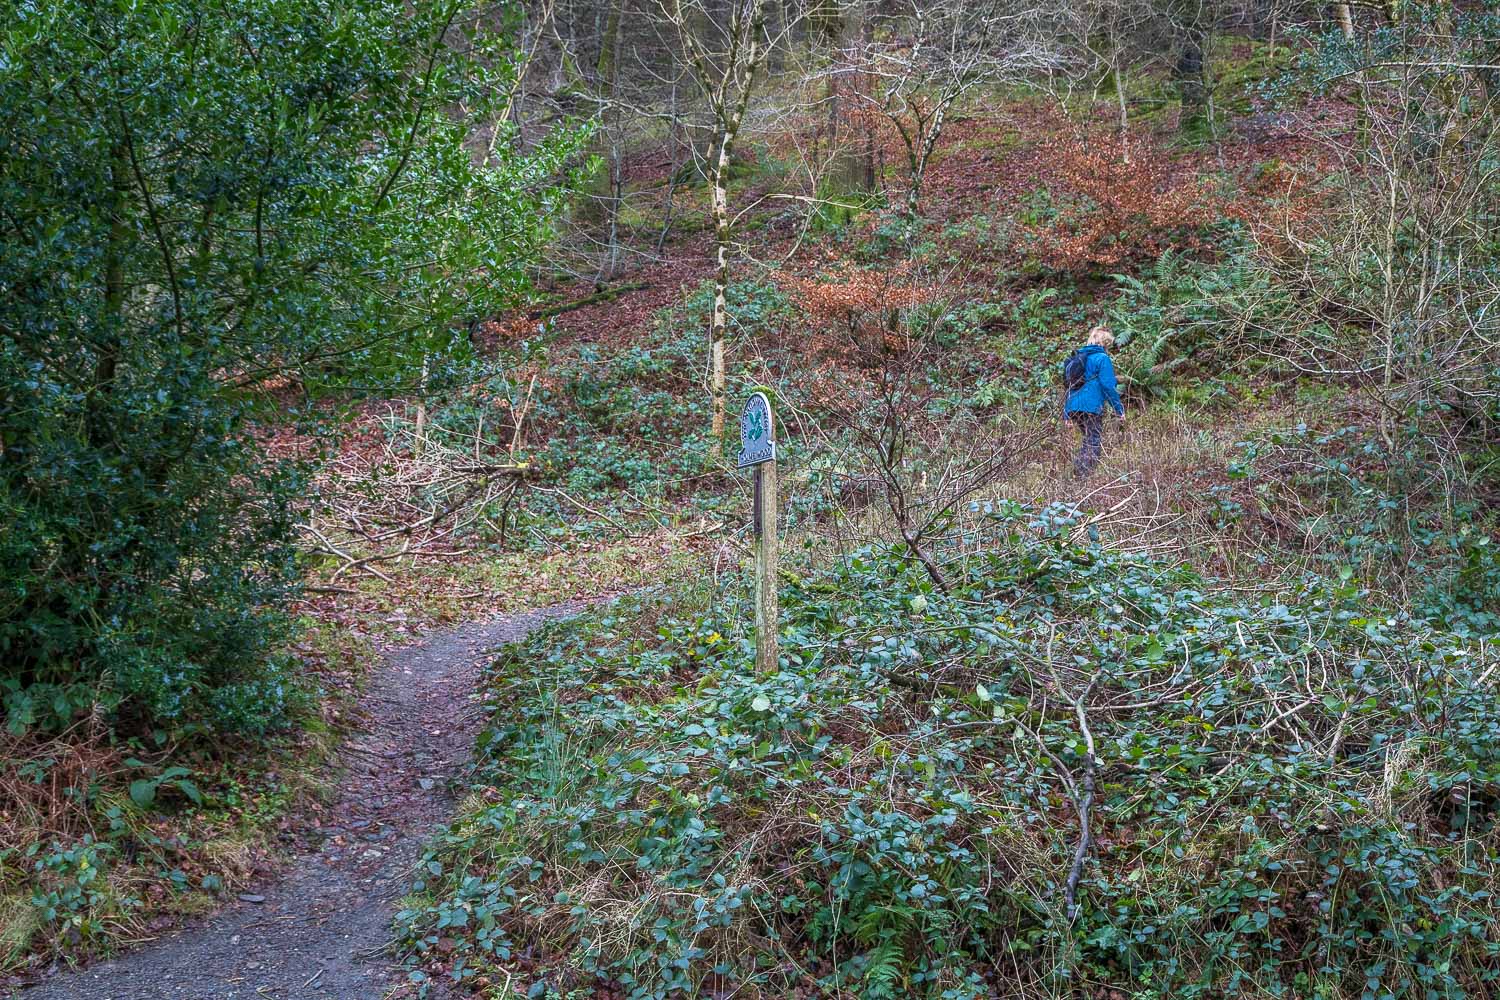 Holme Wood walk